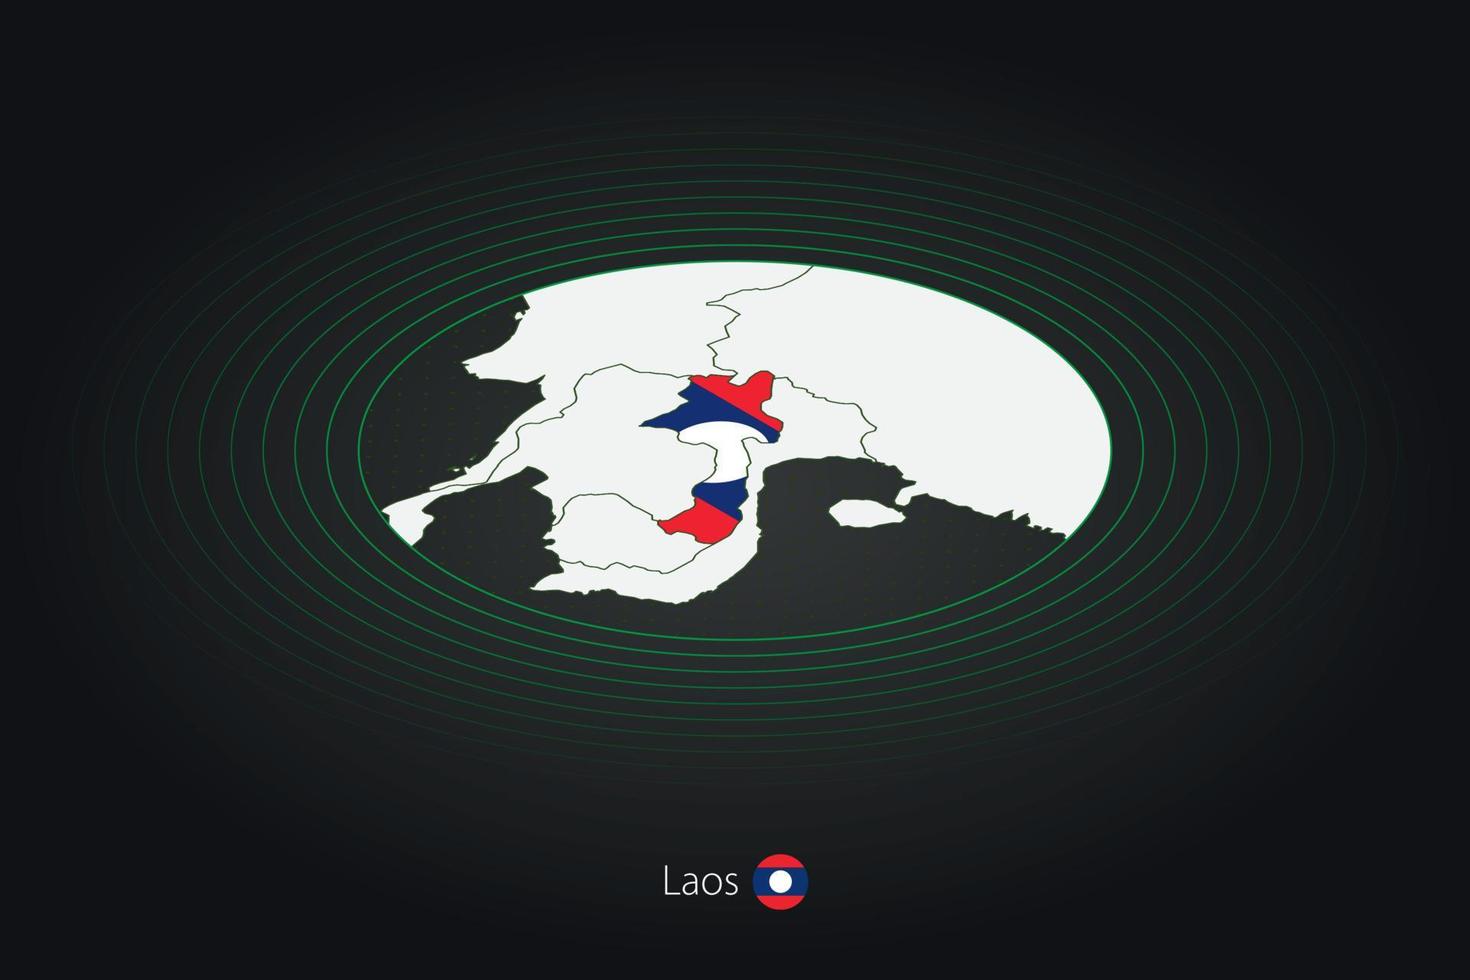 laos Karta i mörk Färg, oval Karta med angränsande länder. vektor